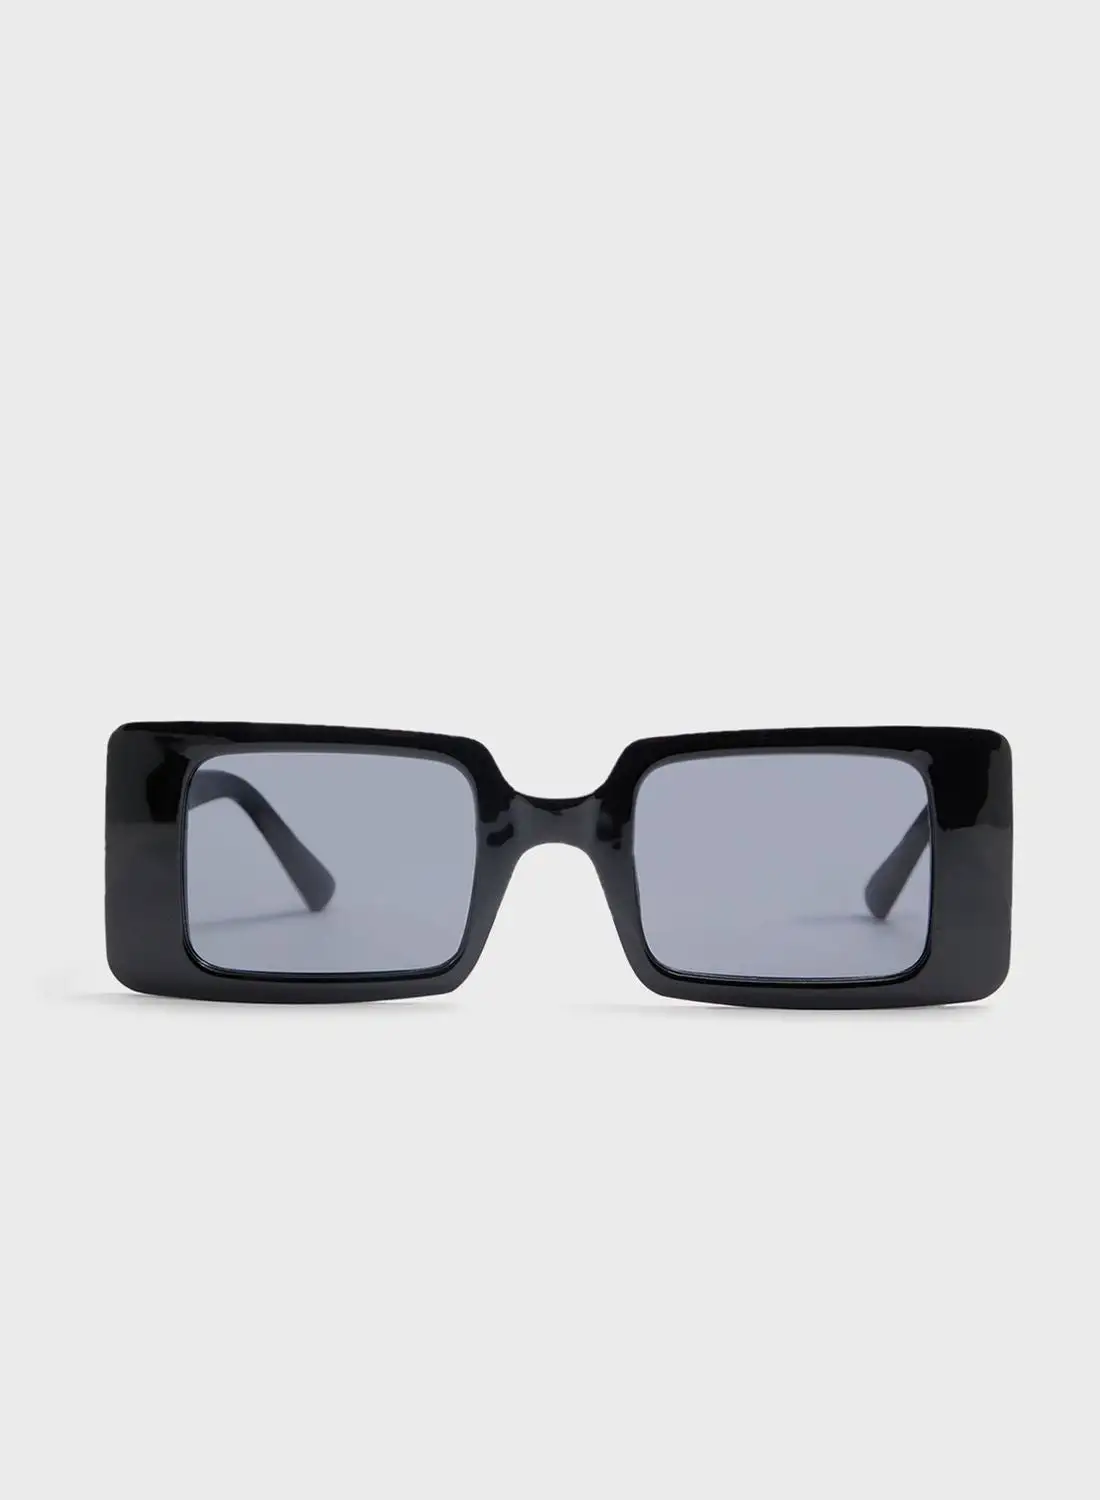 نظارات ألدو سيليا الشمسية